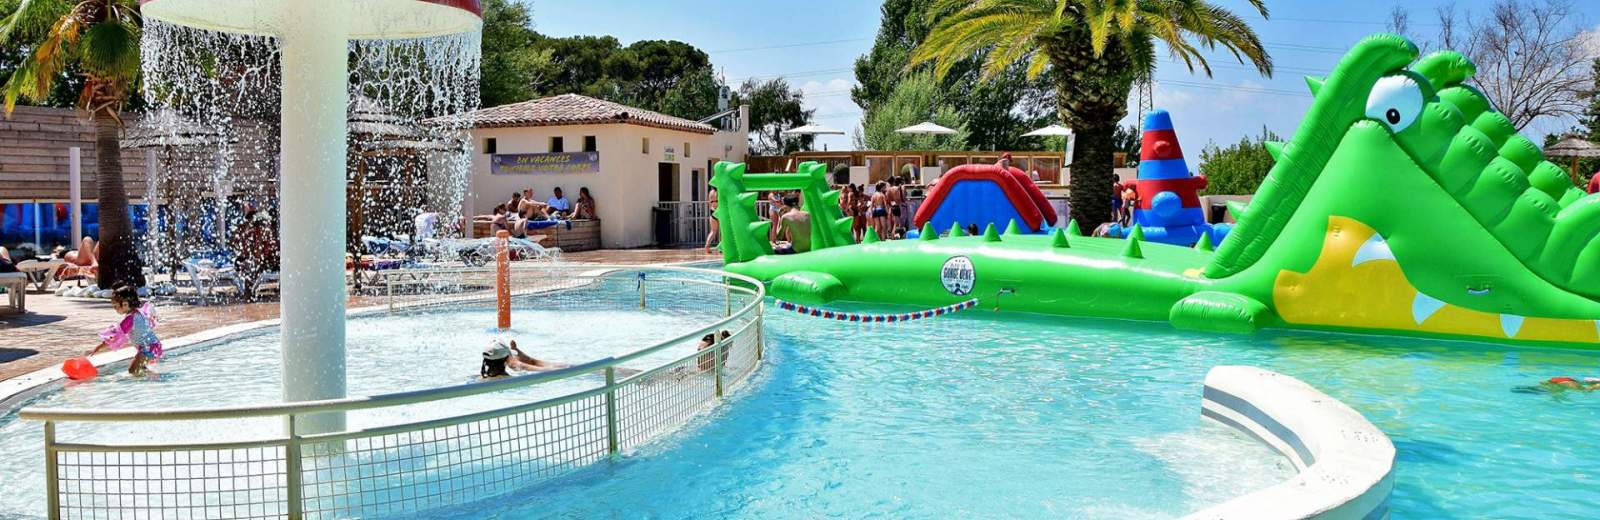 L’espace aquatique du camping comporte une piscine chauffée avec des structures gonflables pour les enfants